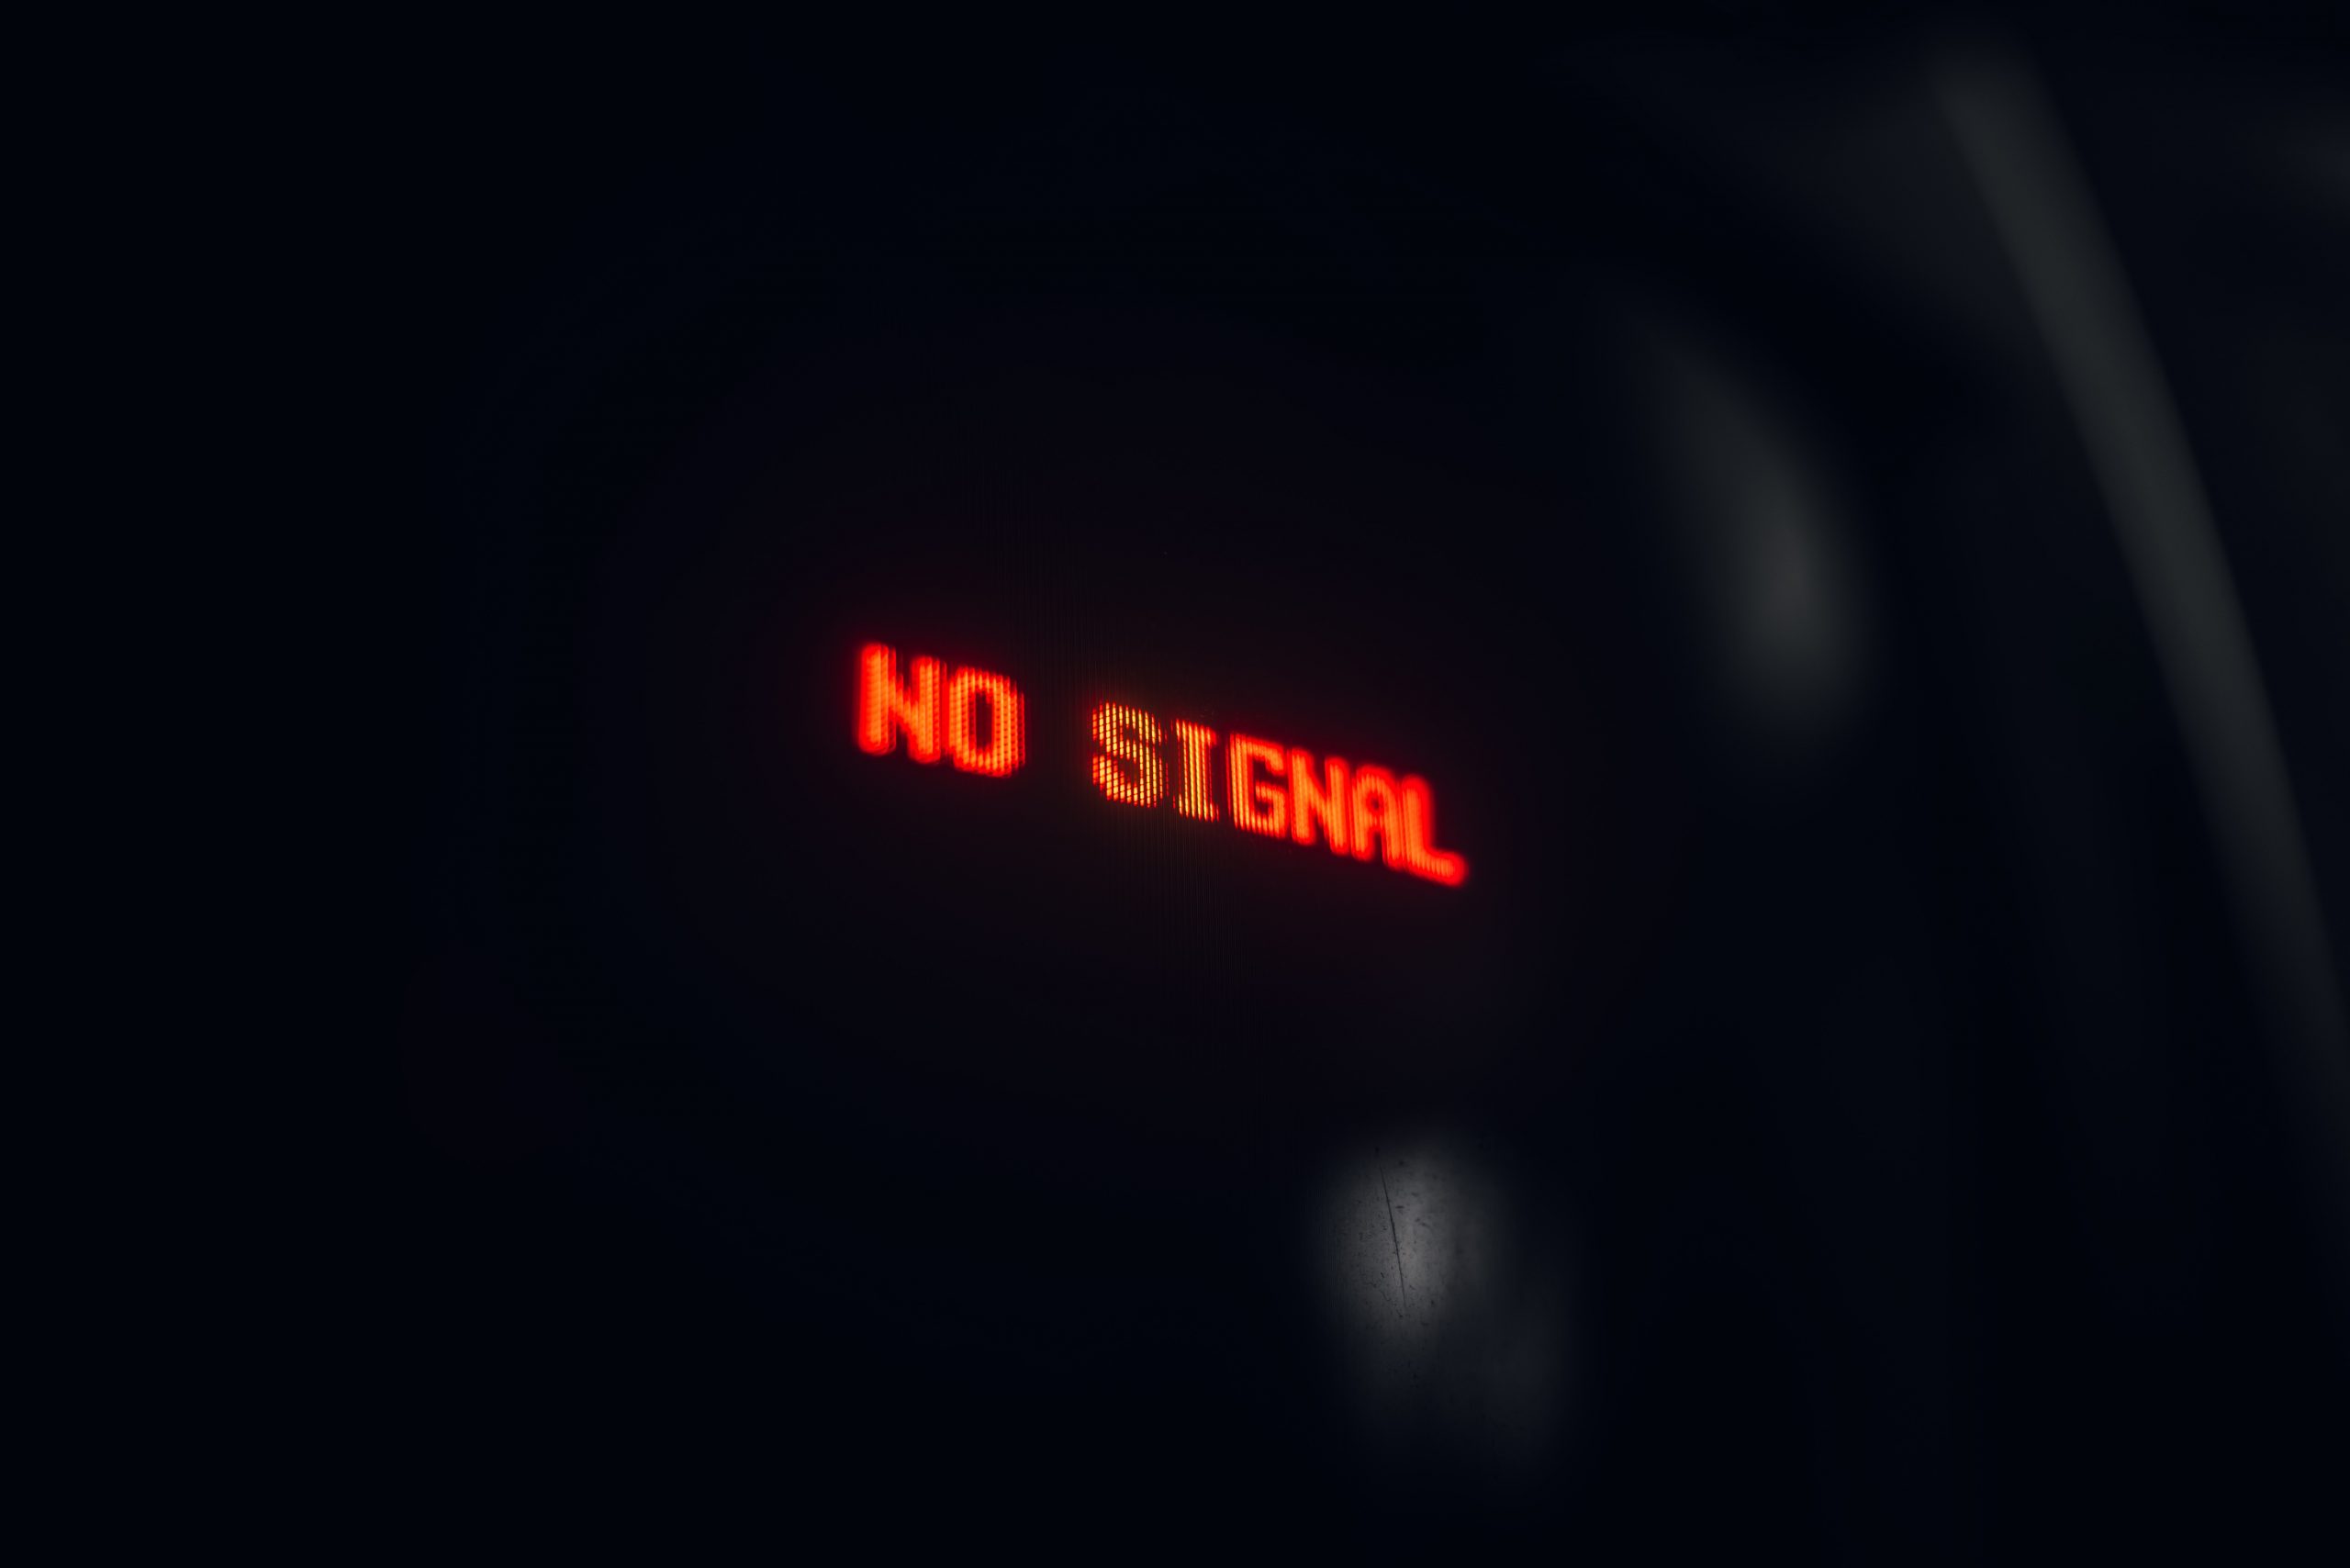 no signal text